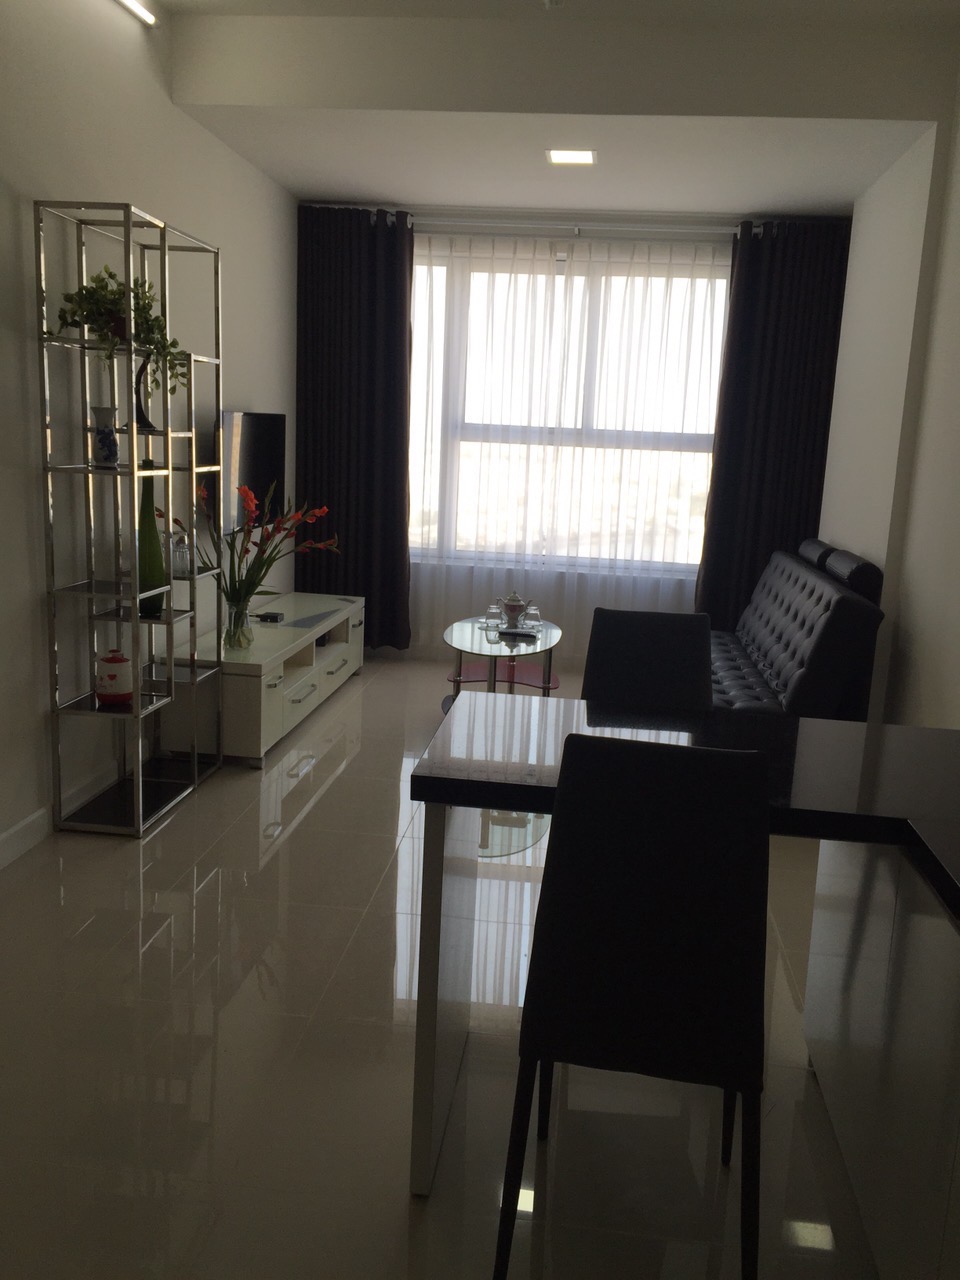 Giá rẻ cho thuê gấp1 phòng ngủ căn hộ chung cư Galaxy 9 - Nguyễn Khoái - Quận 4